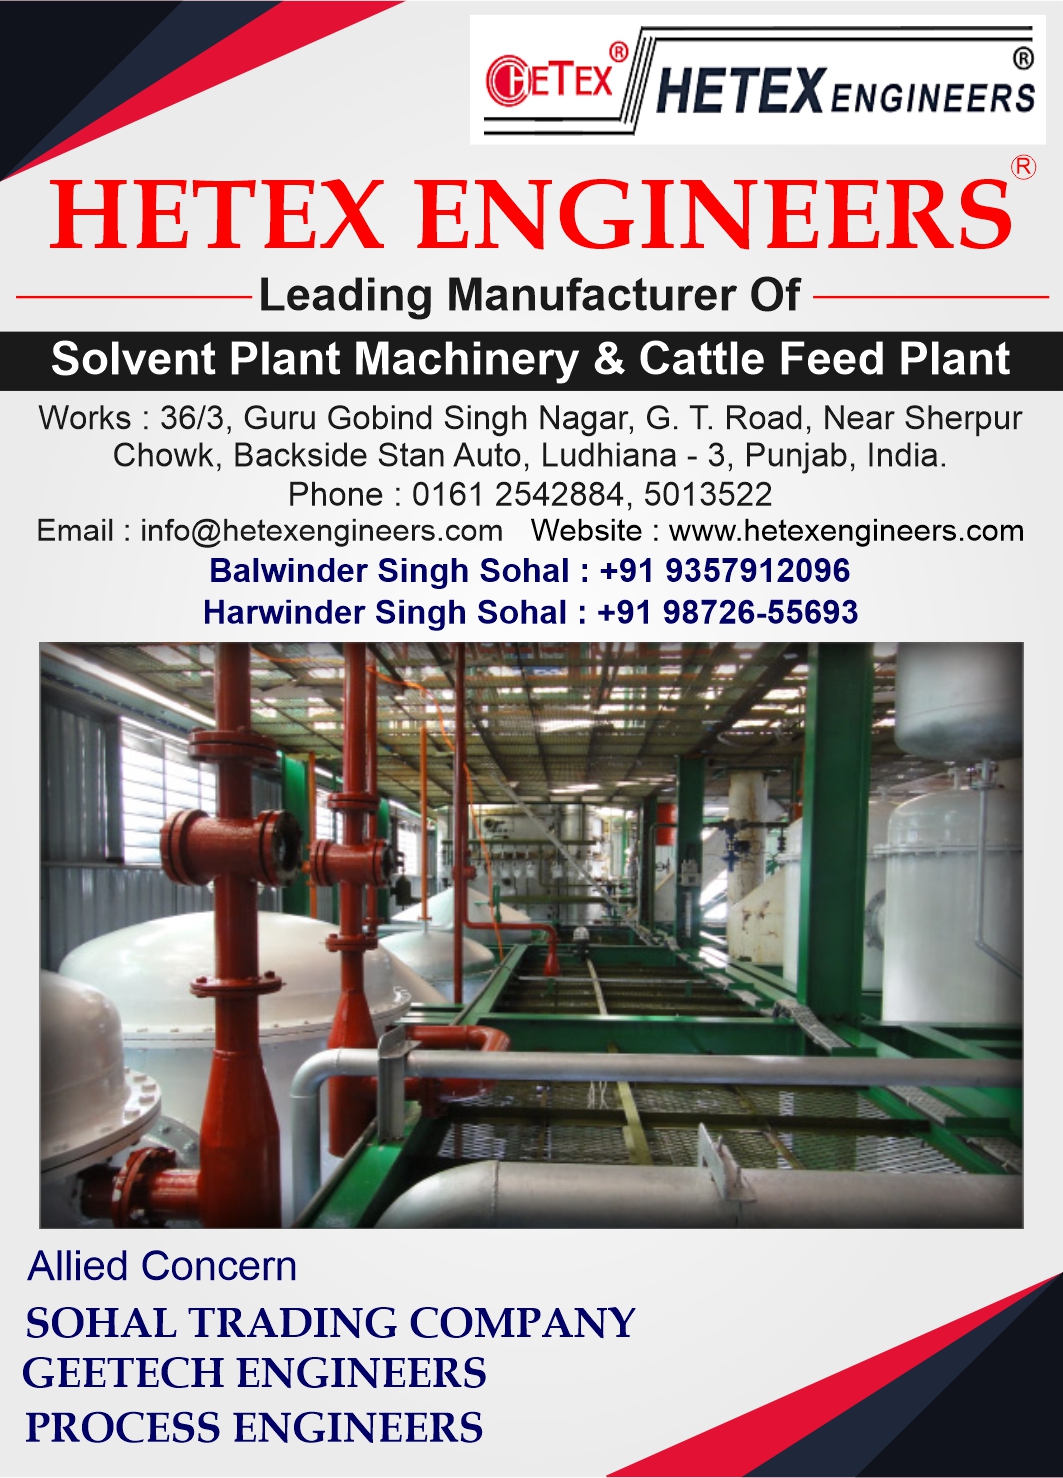 Hetex Engineers